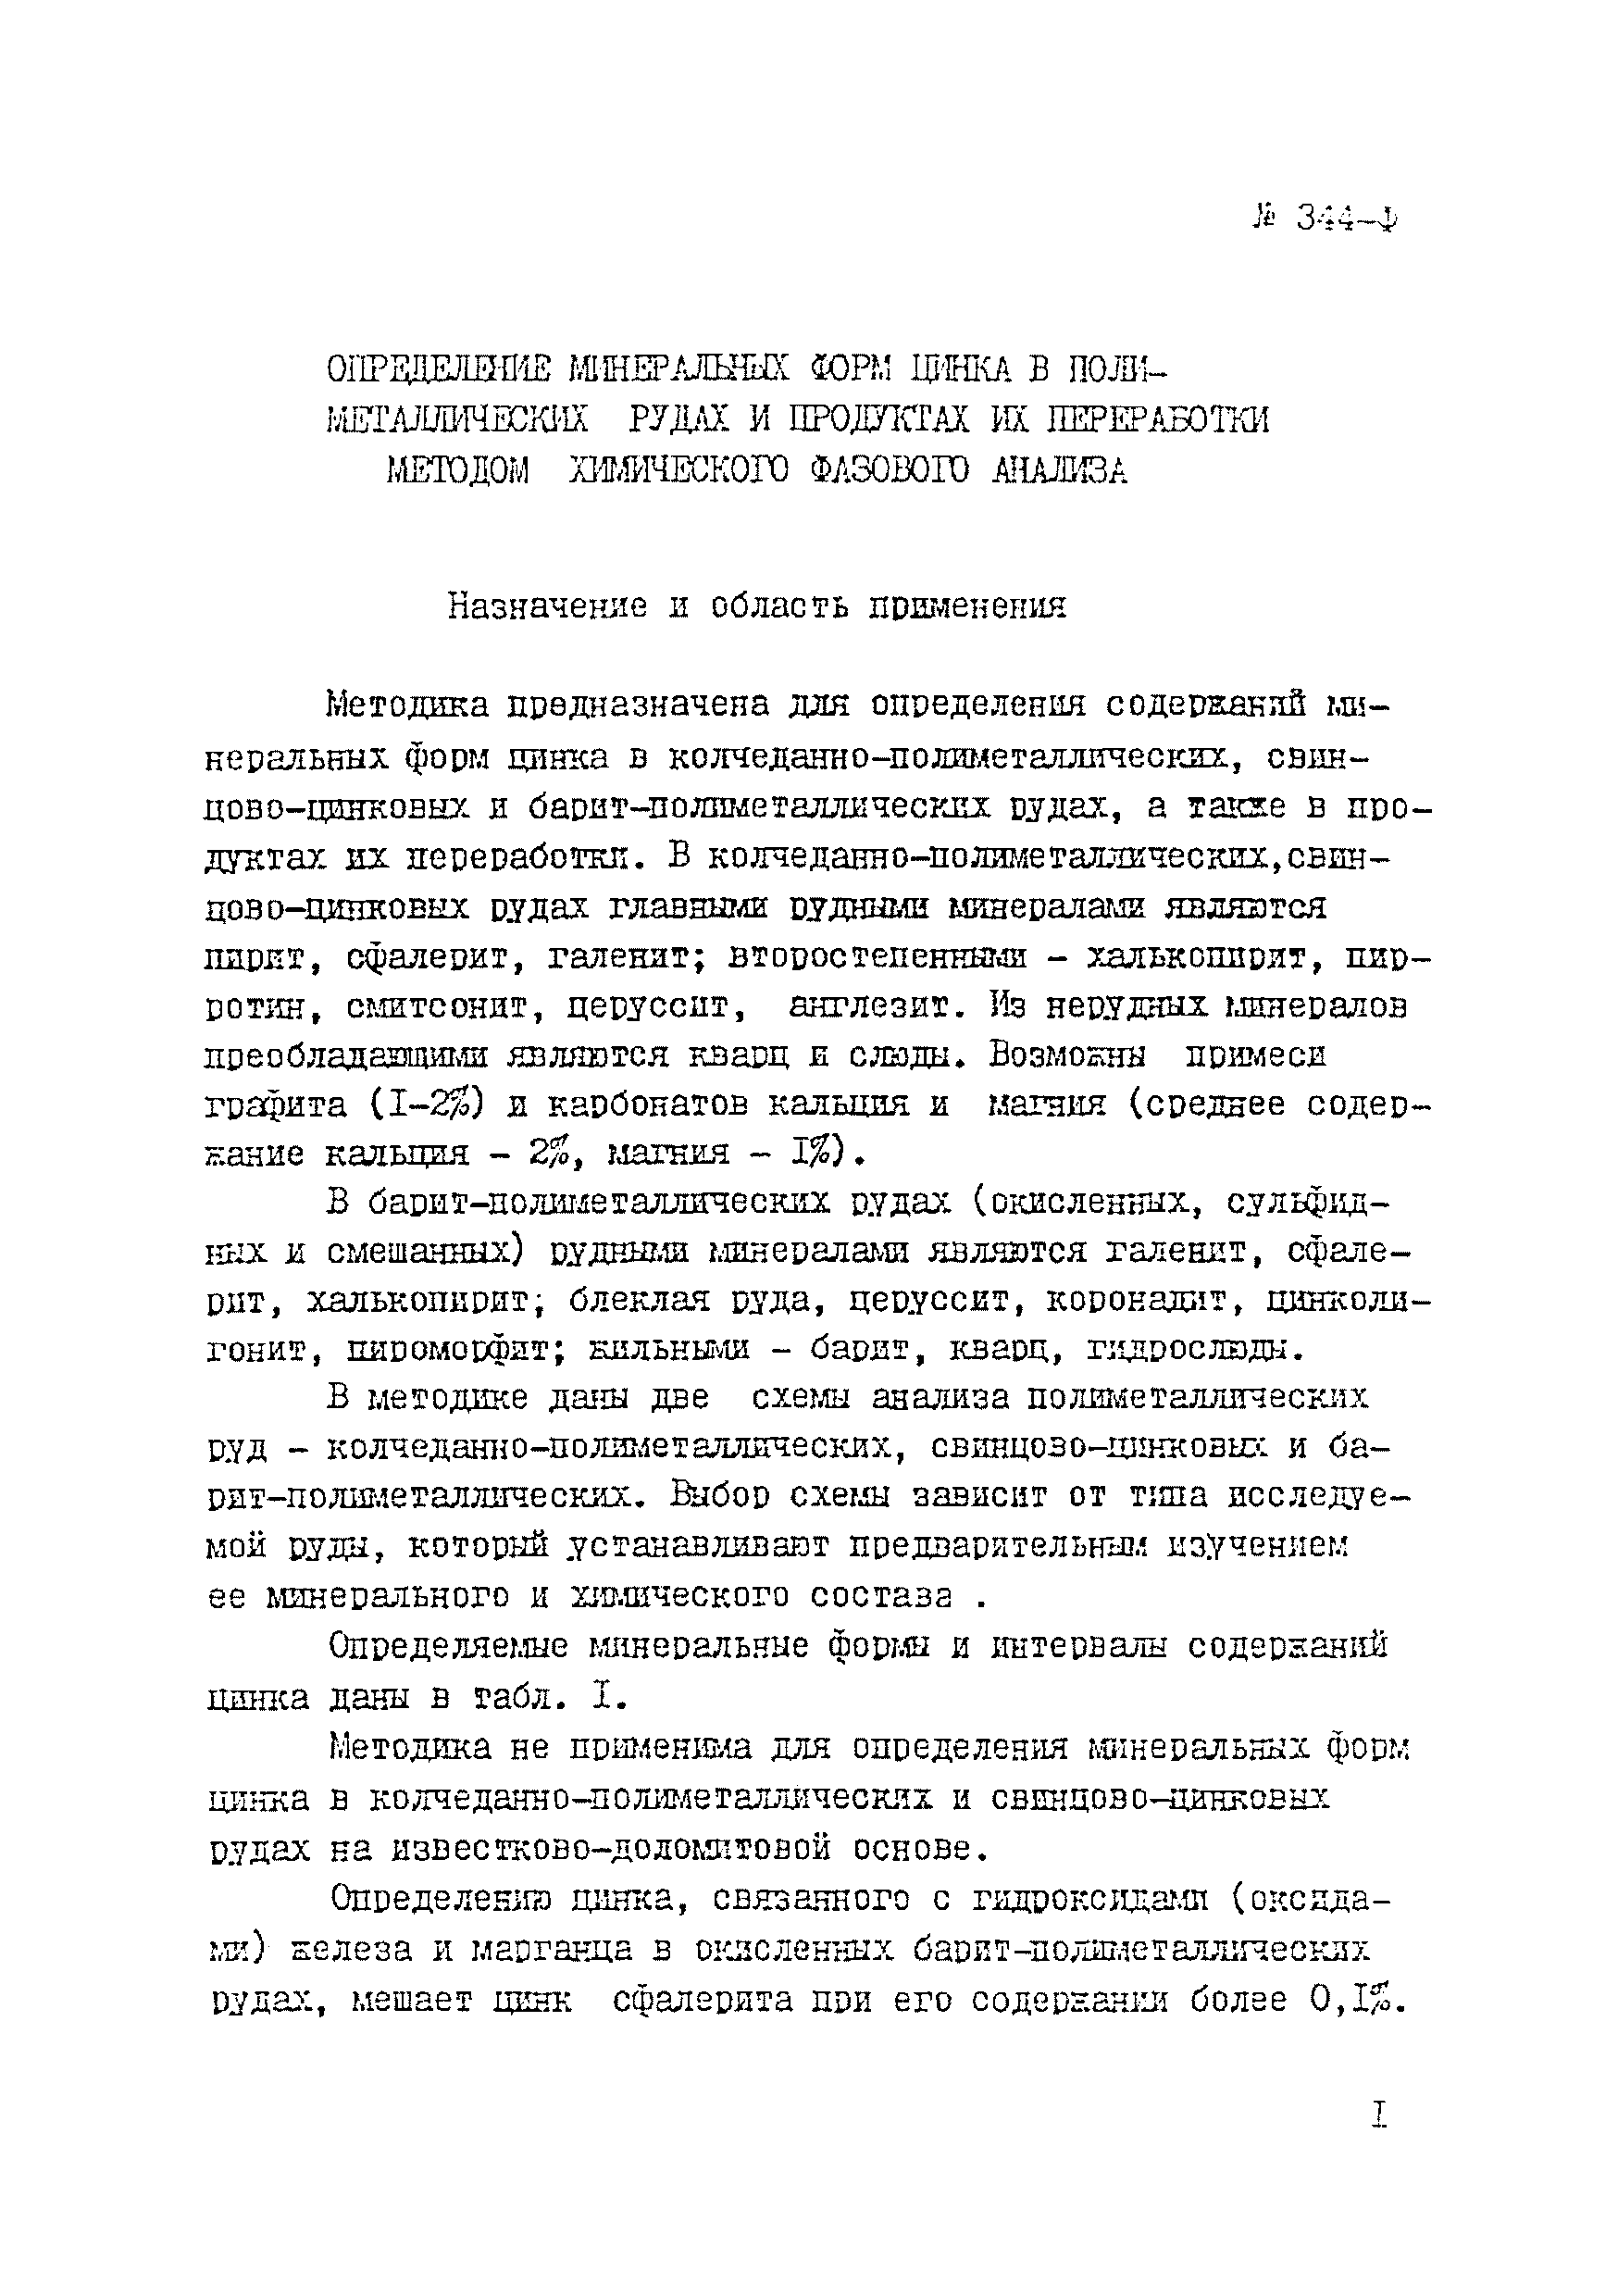 Инструкция НСАМ 344-Ф